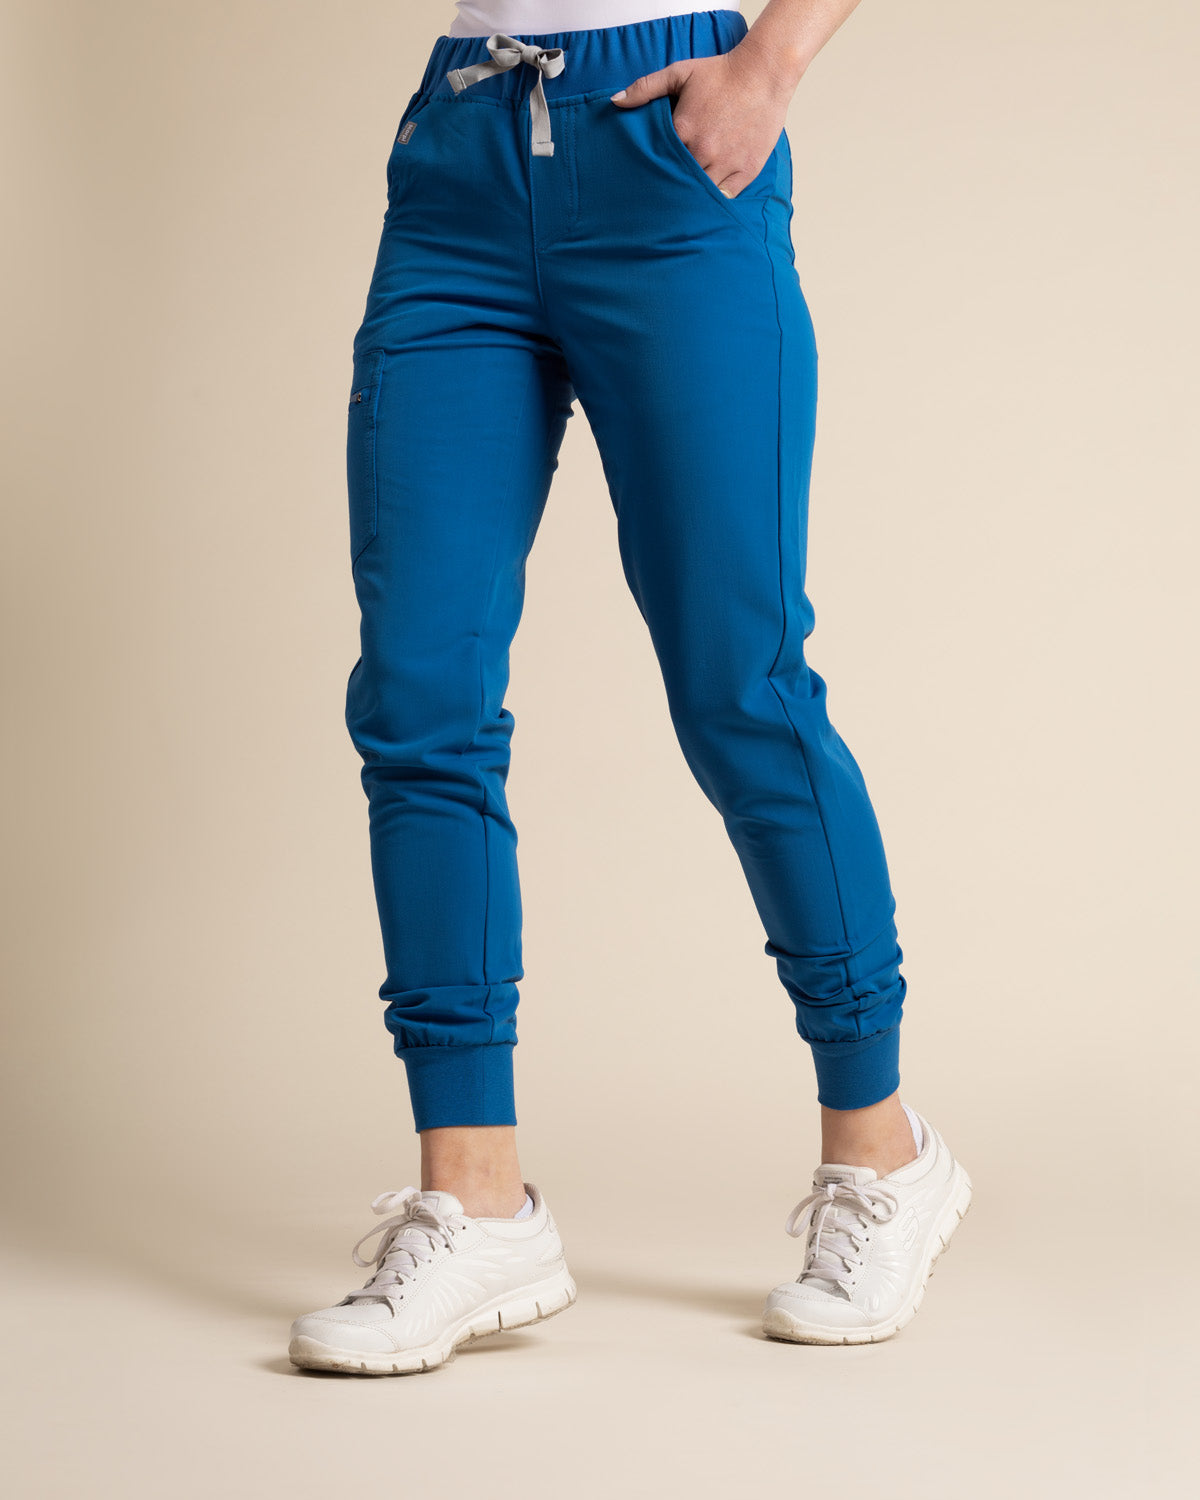 Pantalón jogger para mujer azul Bolf W5071 AZUL